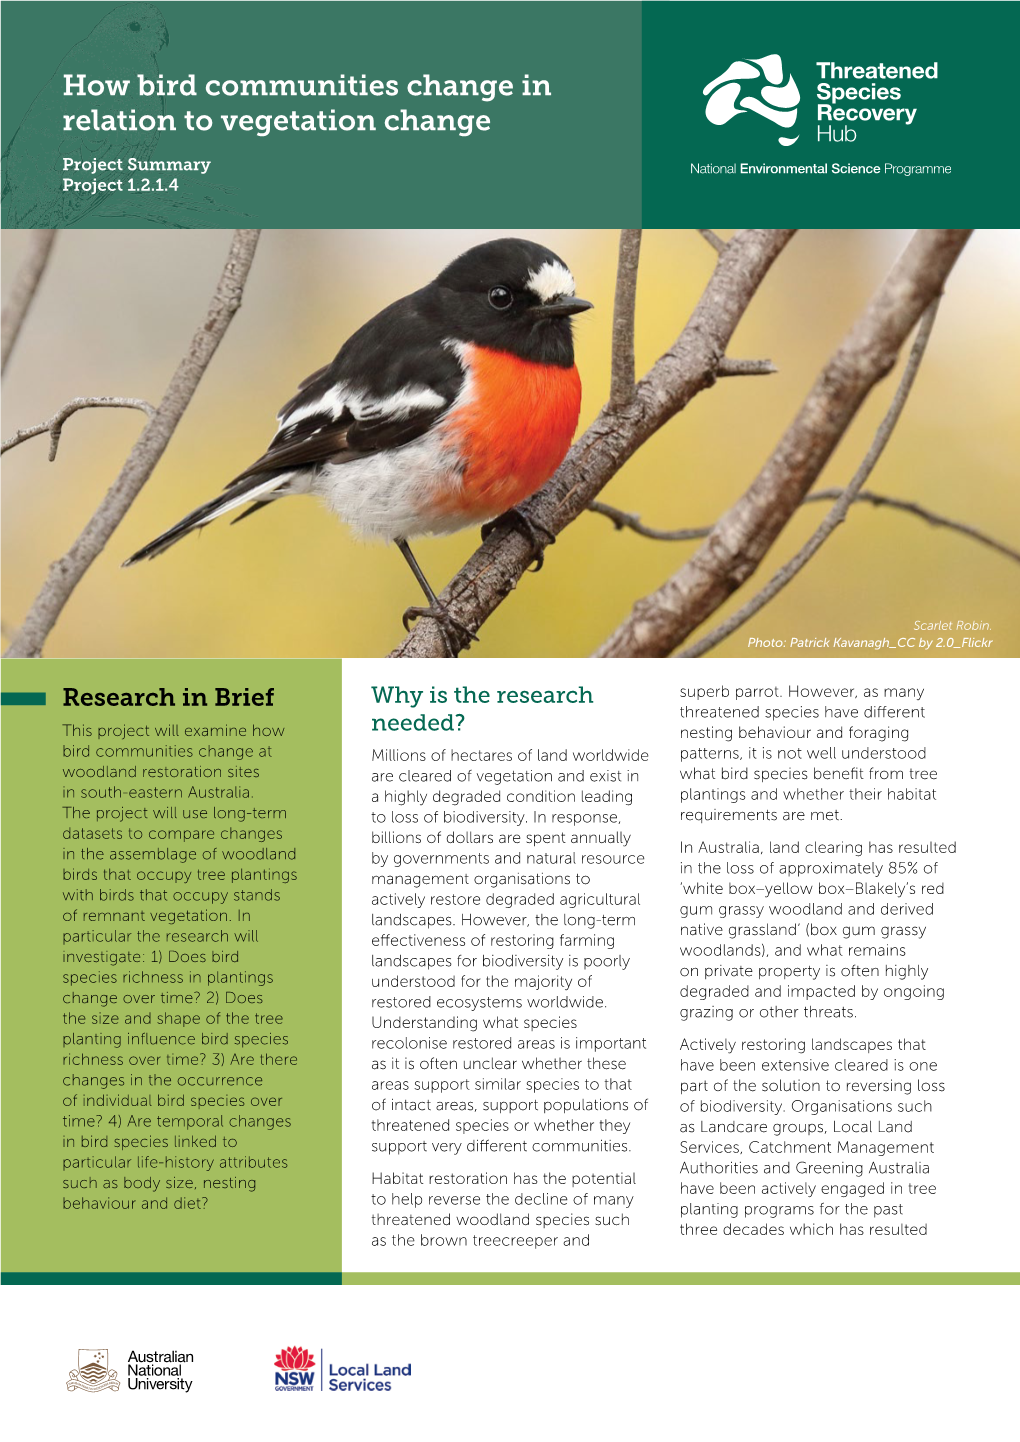 How Bird Communities Change in Relation to Vegetation Change